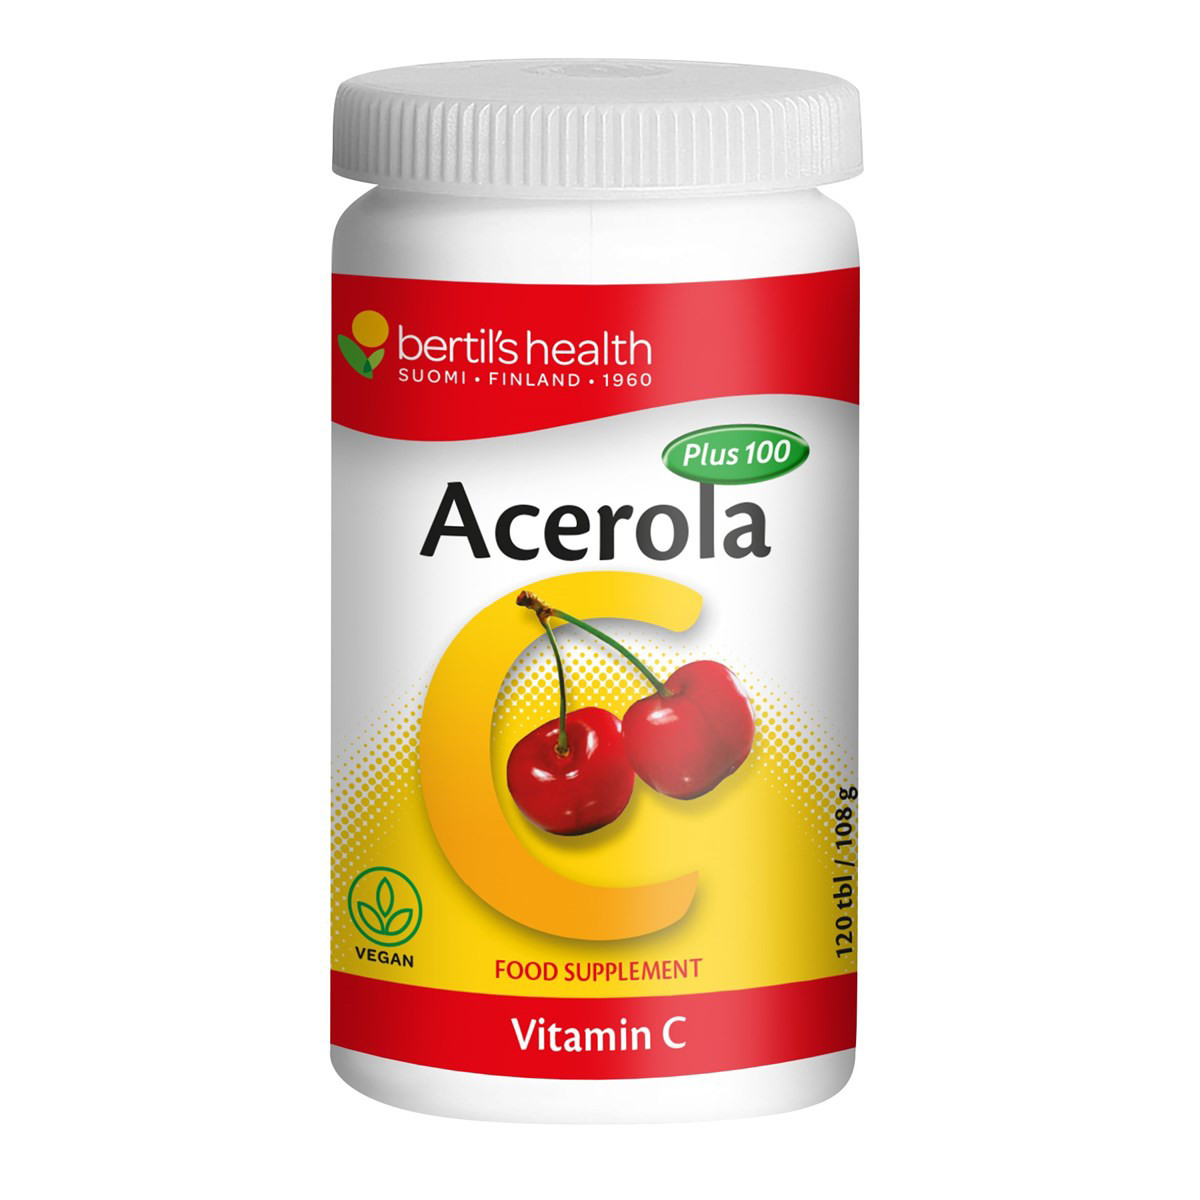 ACEROLA PLUS 100, vitaminas C, 120 kramtomųjų tablečių